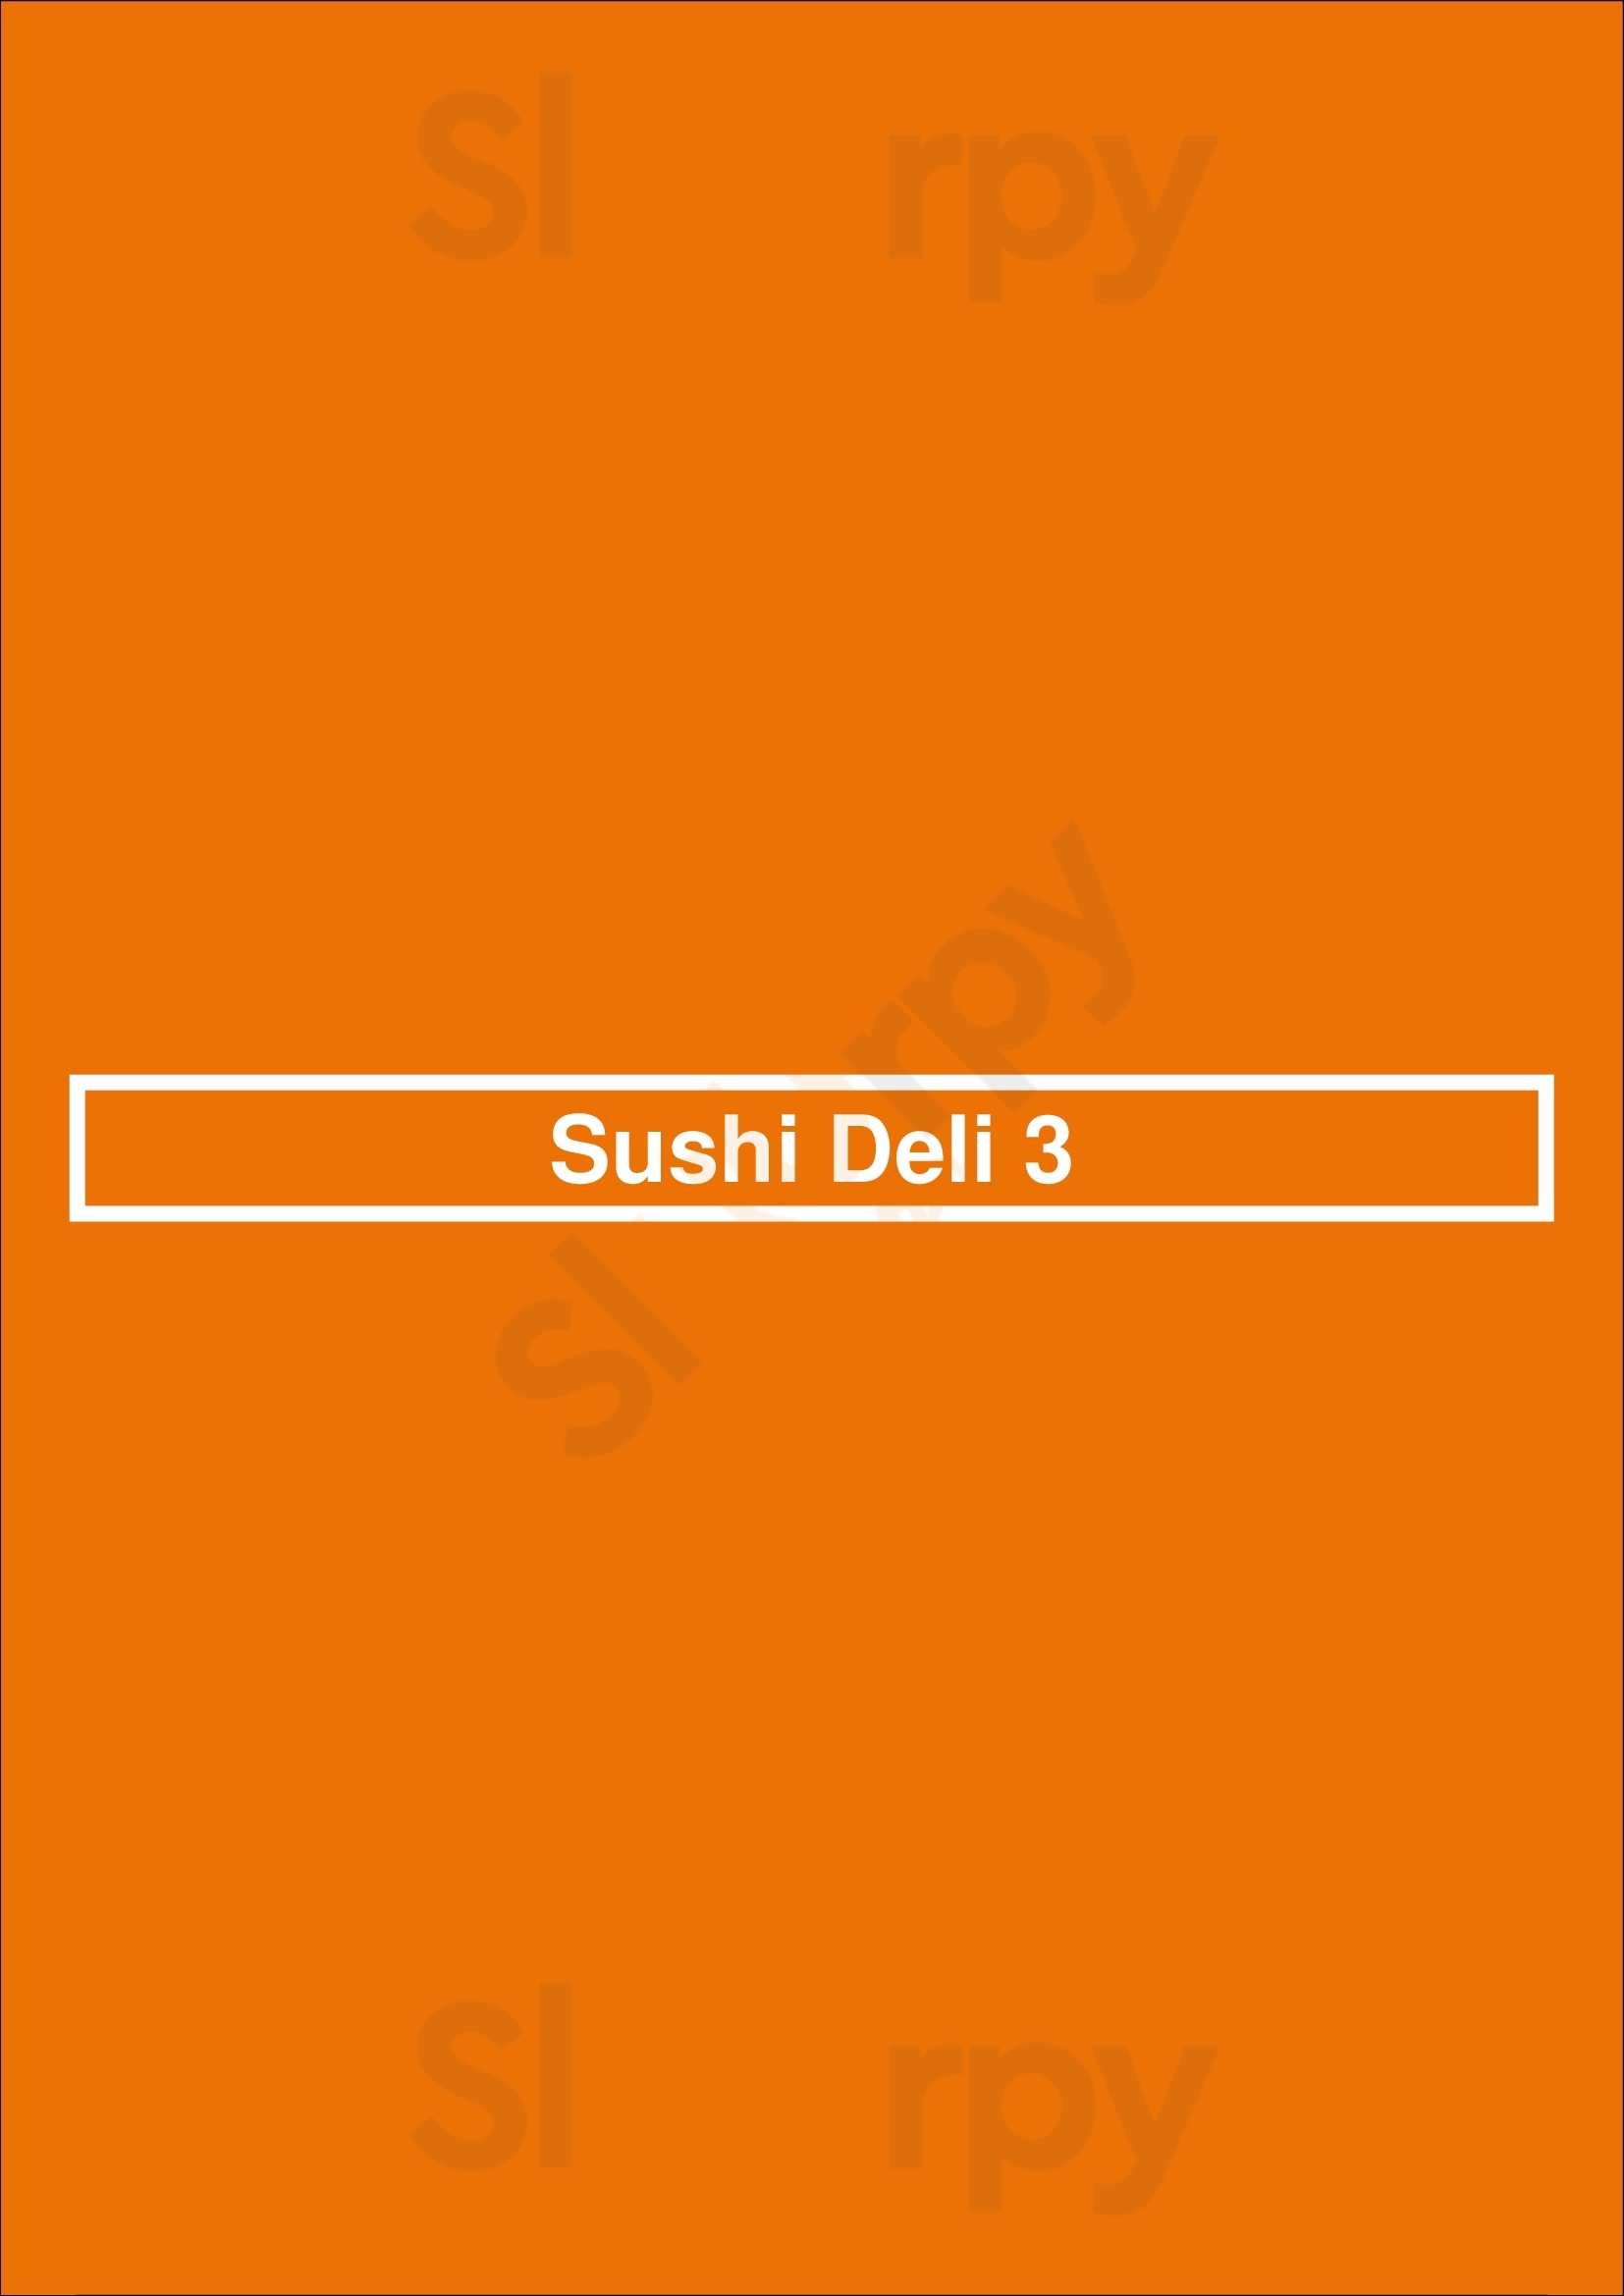 Sushi Deli 3 San Diego Menu - 1